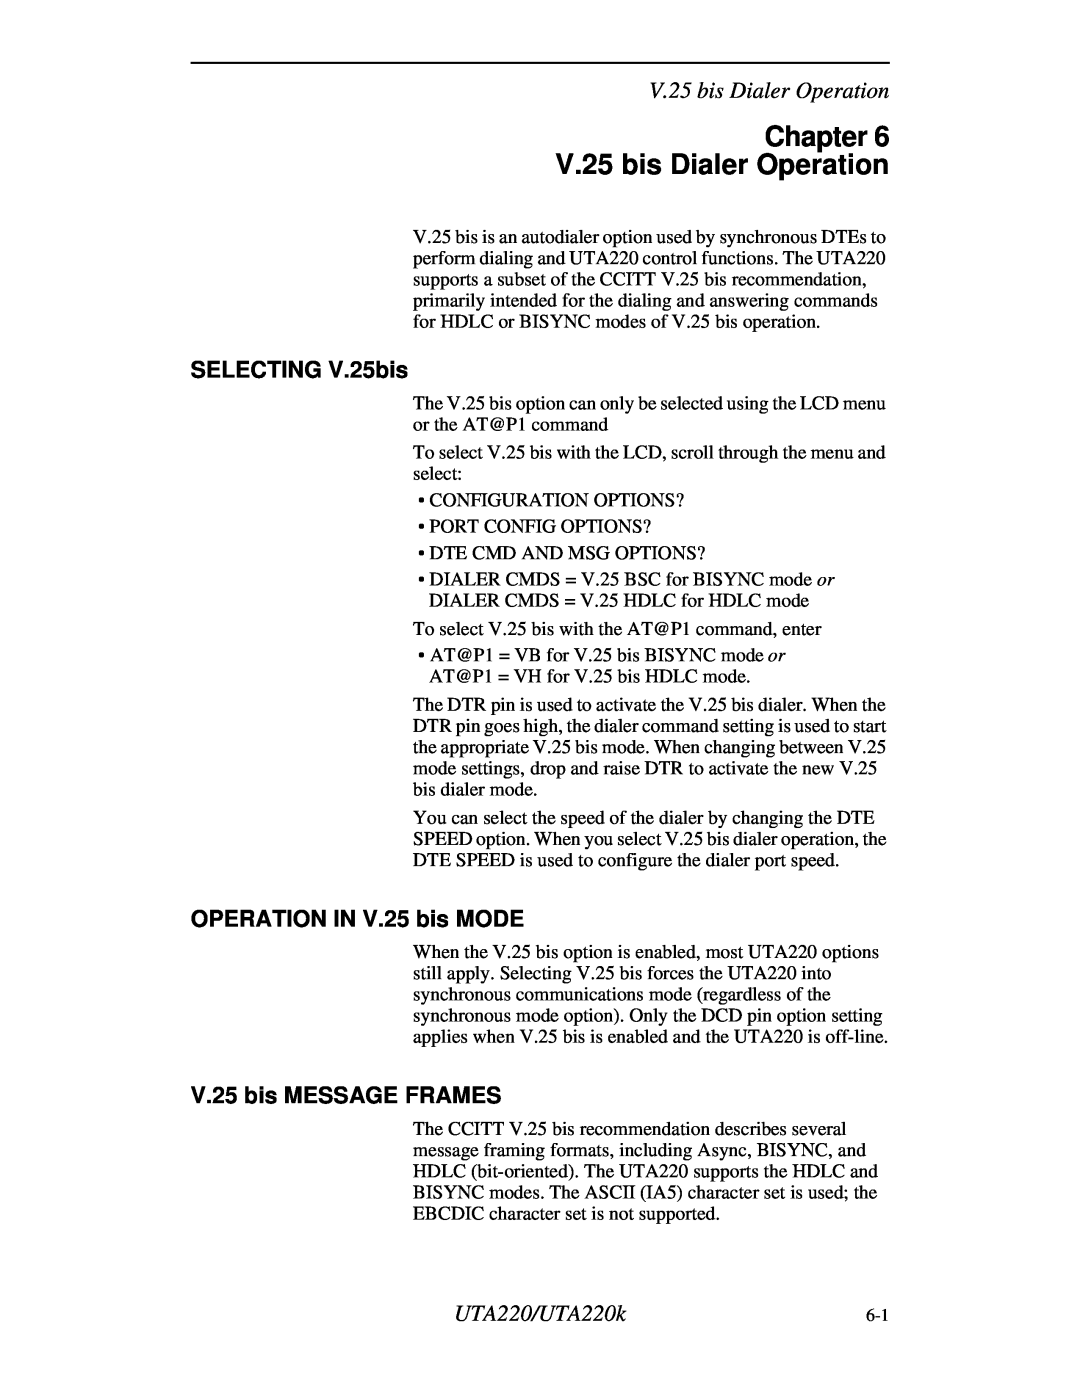 Northern UTA220/UTA220k manual Chapter V.25 bis Dialer Operation, SELECTING V.25bis, OPERATION IN V.25 bis MODE 